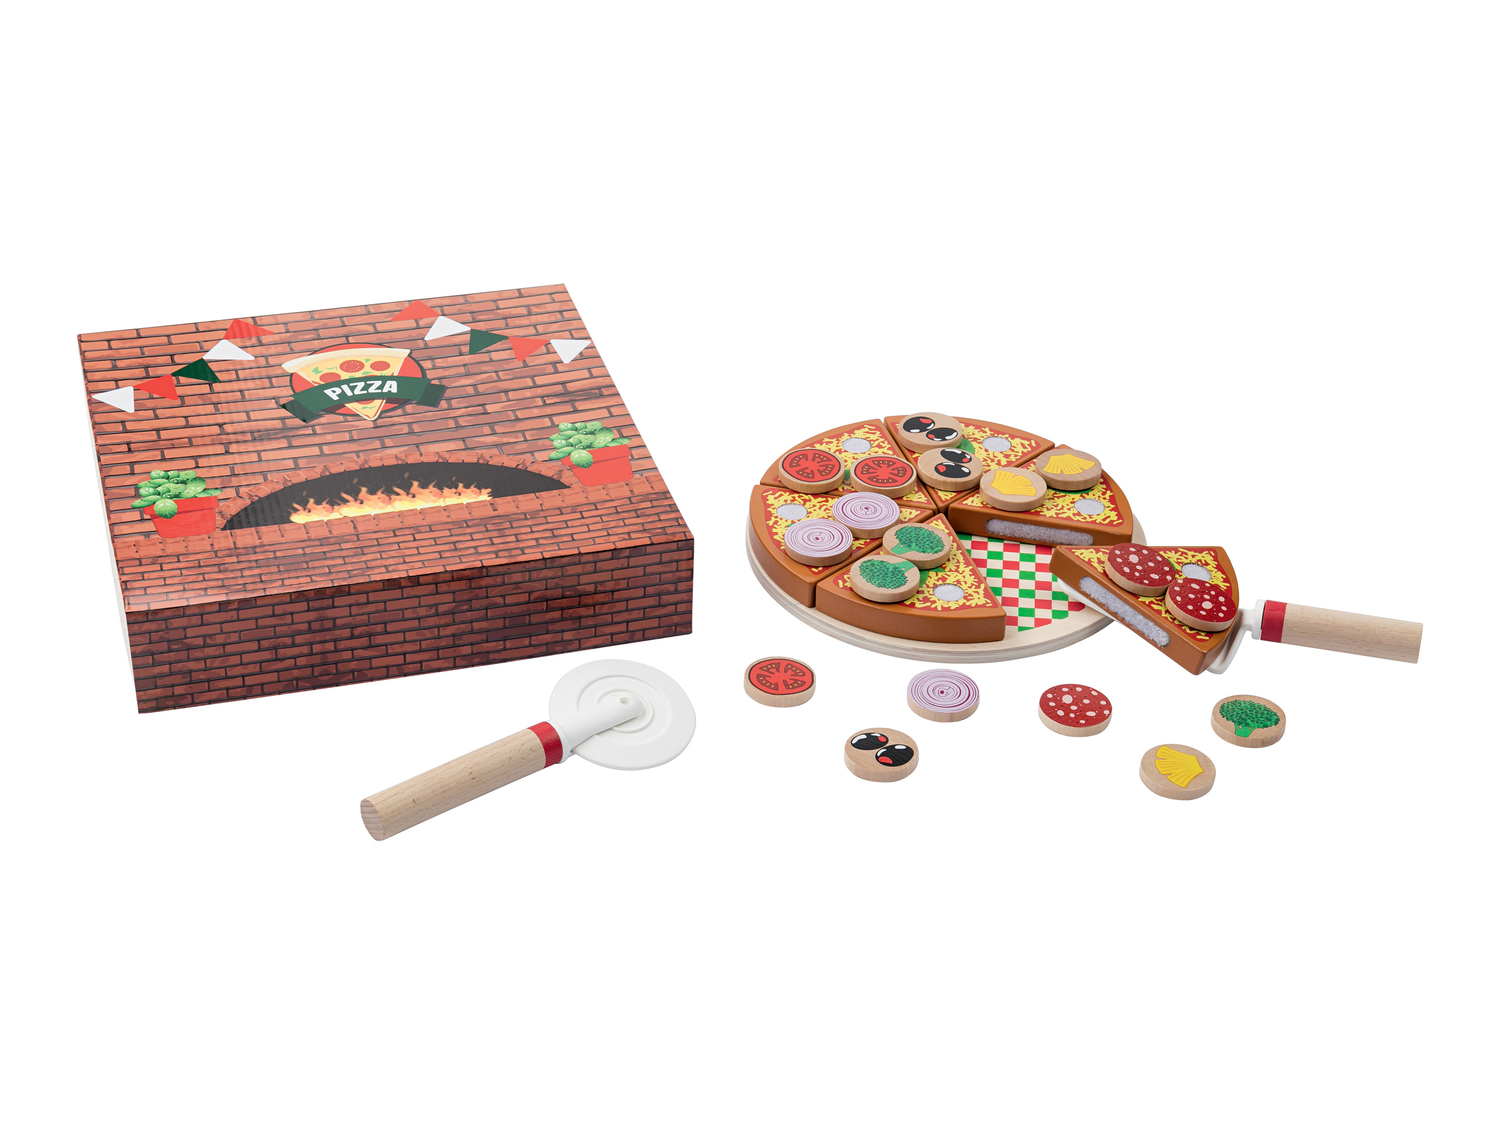 Set alimenti giocattolo in legno Playtive Junior, prezzo 4.99 &#8364; 

Caratteristiche

- ...